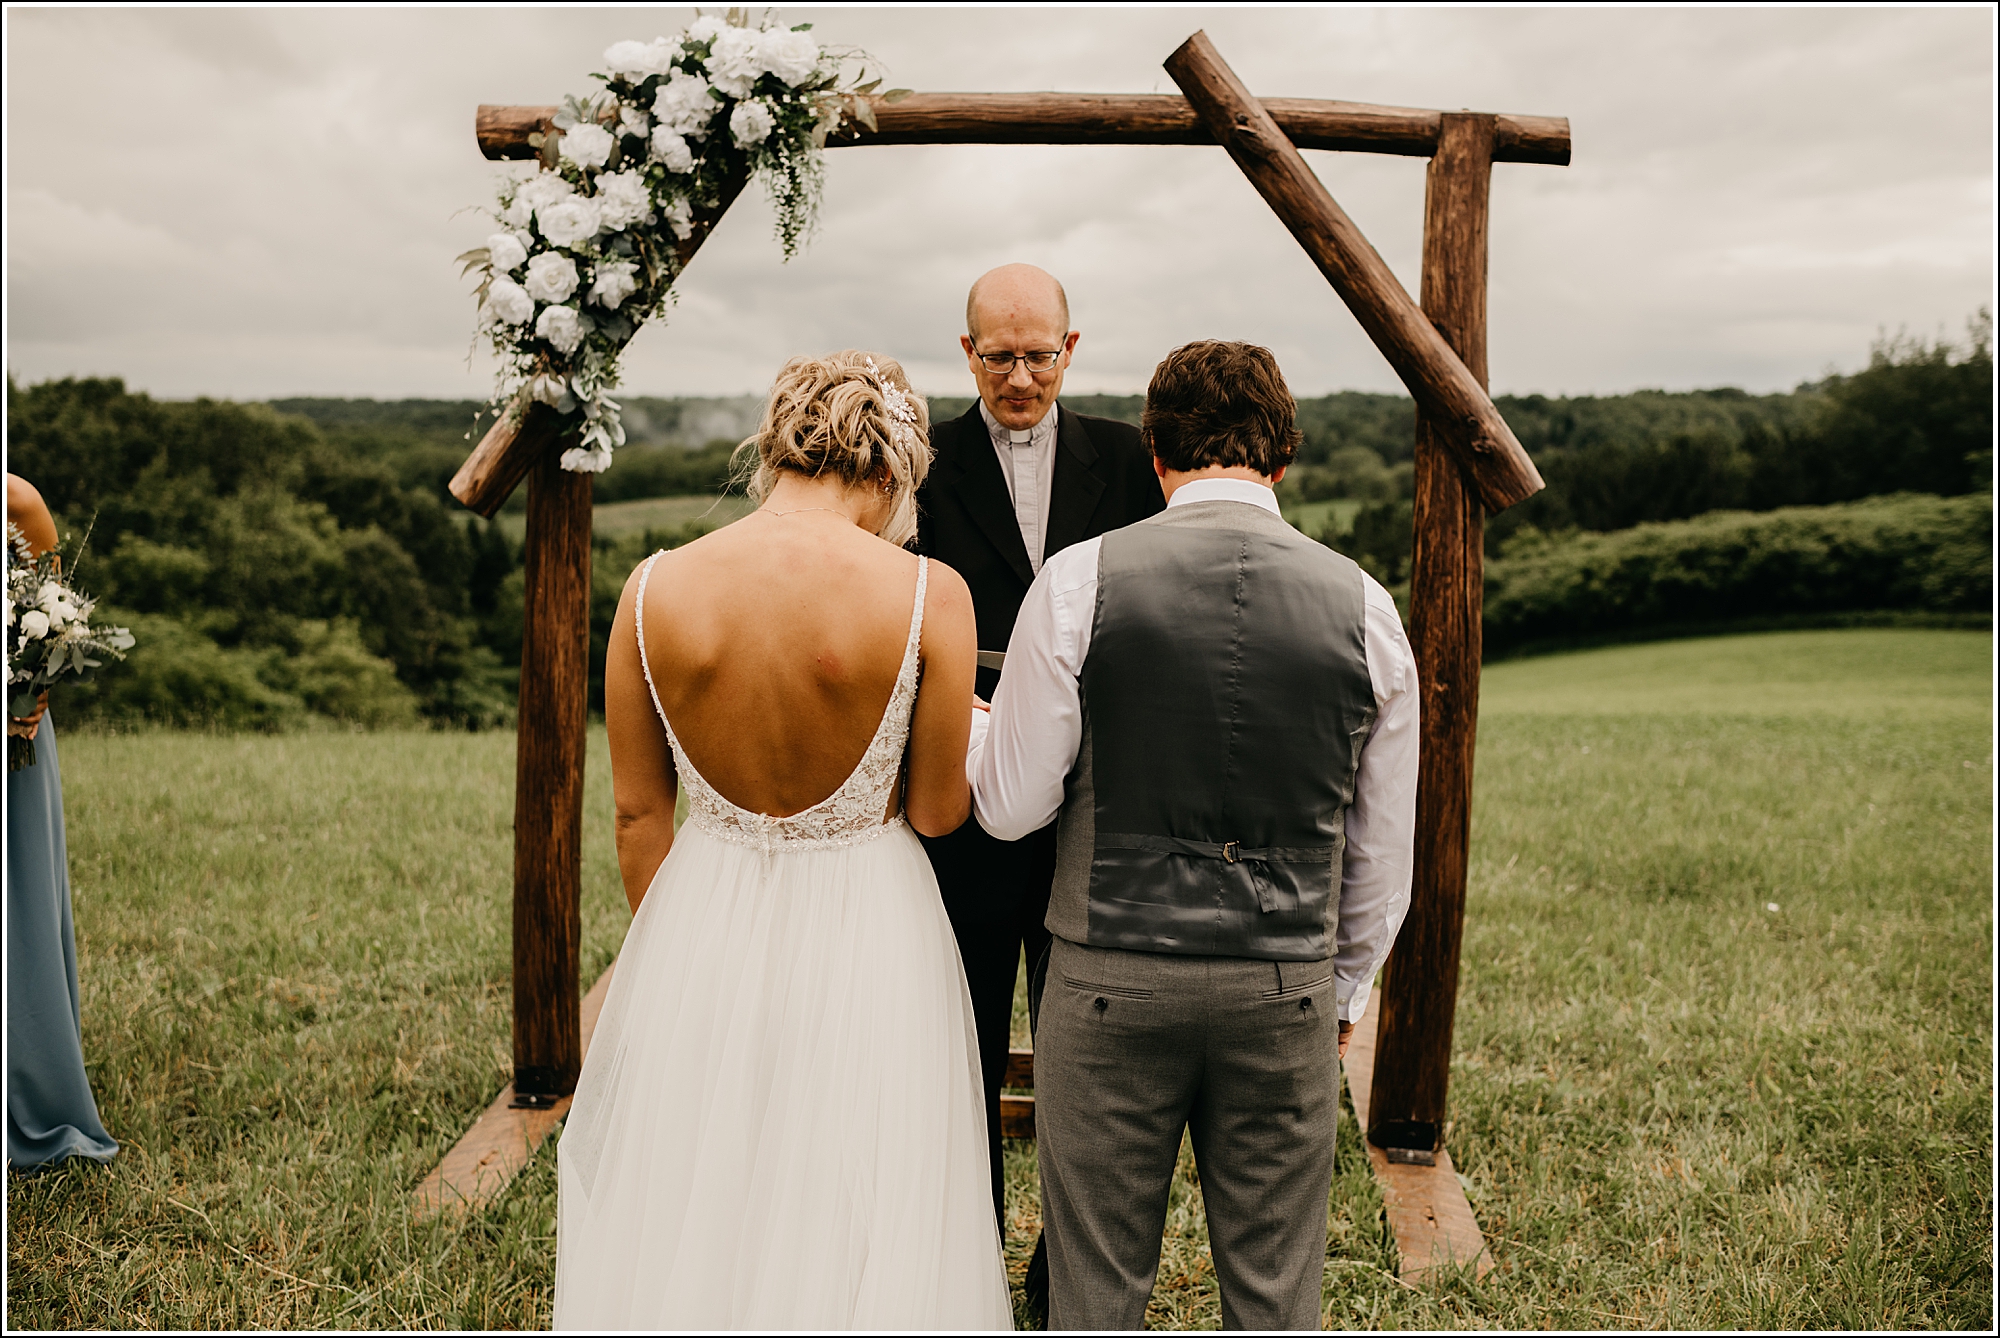 La Crosse, WI bride and groom outdoor ceremony